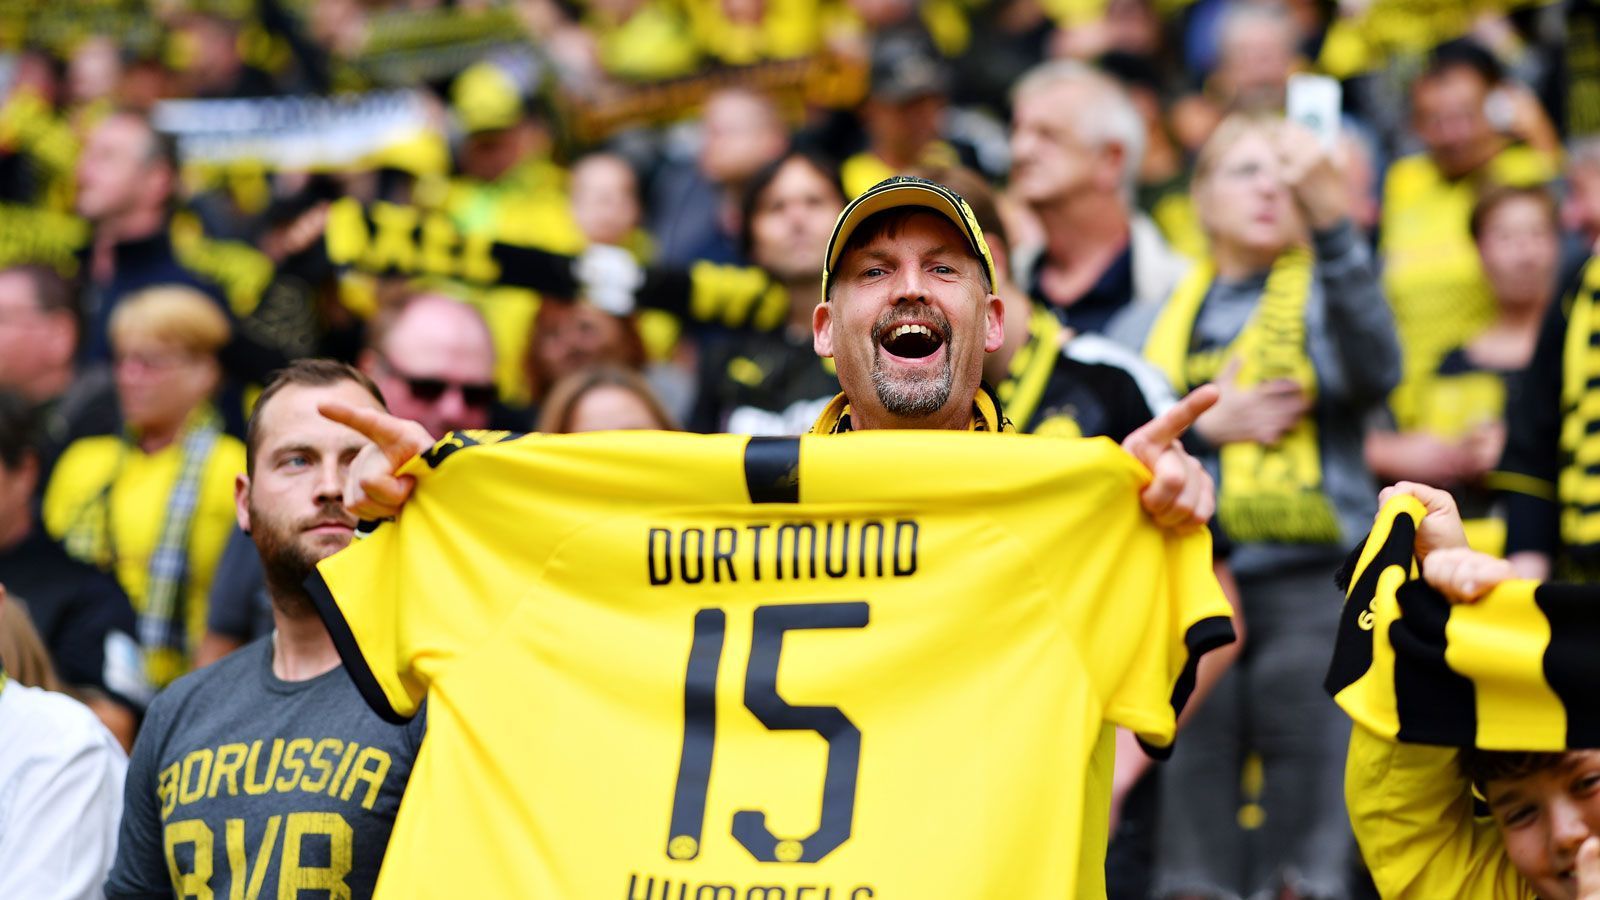 
                <strong>Borussia Dortmund </strong><br>
                Erwachsene (ab 18 Jahre): 62 EuroKinder und Jugendliche (bis 18 Jahre): 30 Euro
              